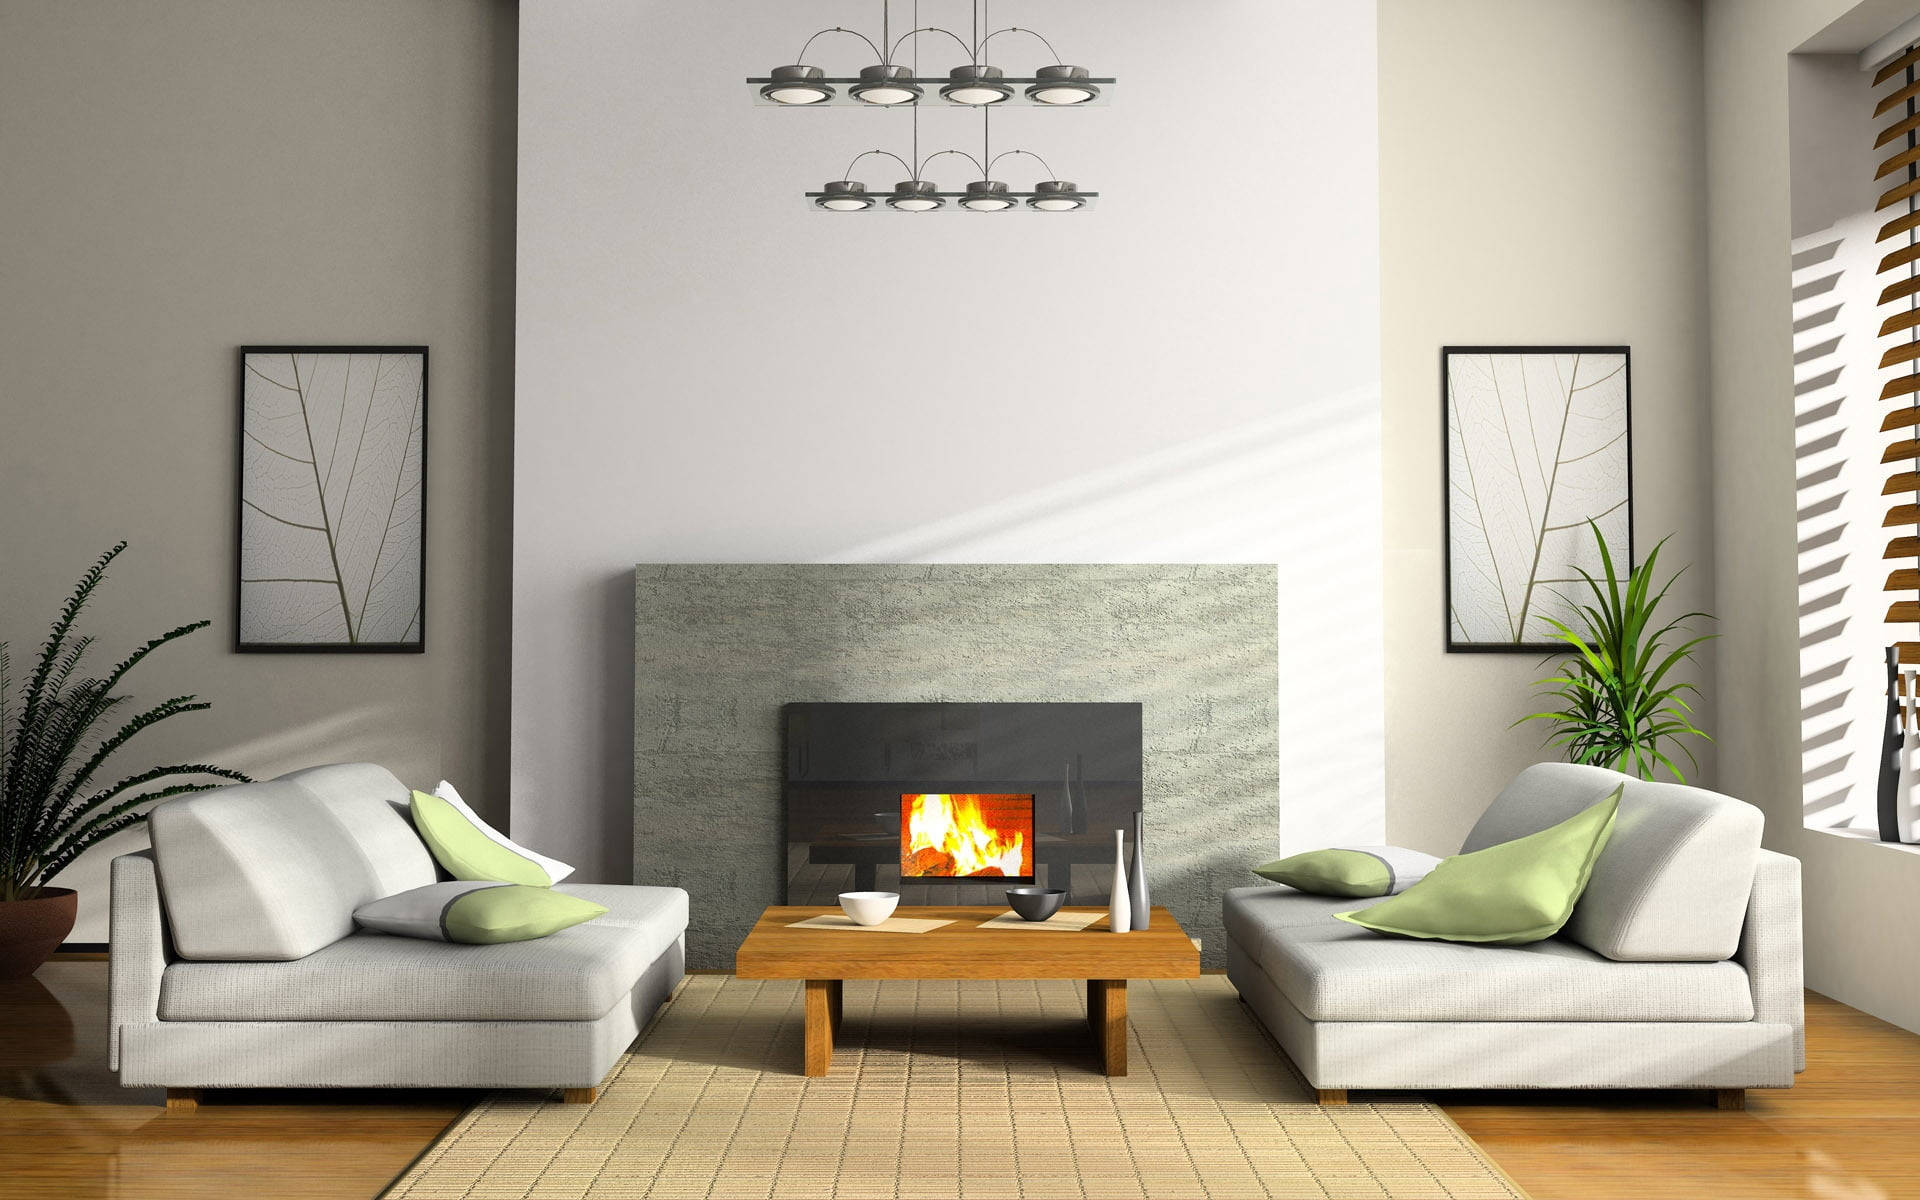 Wooden Tiled Aesthetic Home Living Room